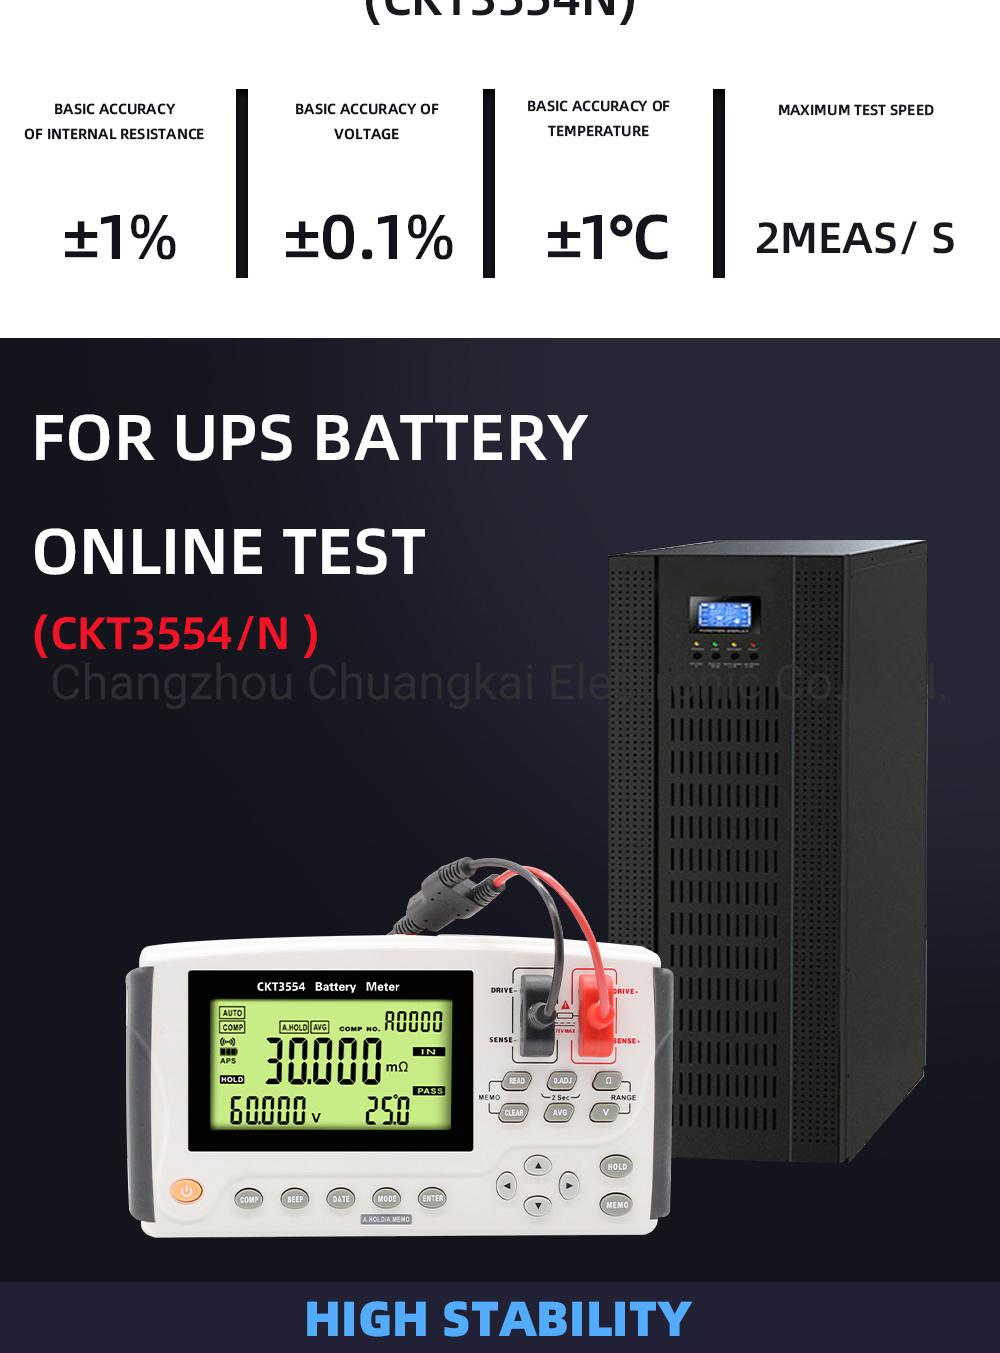 Ckt3554D Handheld Electric Bike Battery Meter for High Voltage Batteries